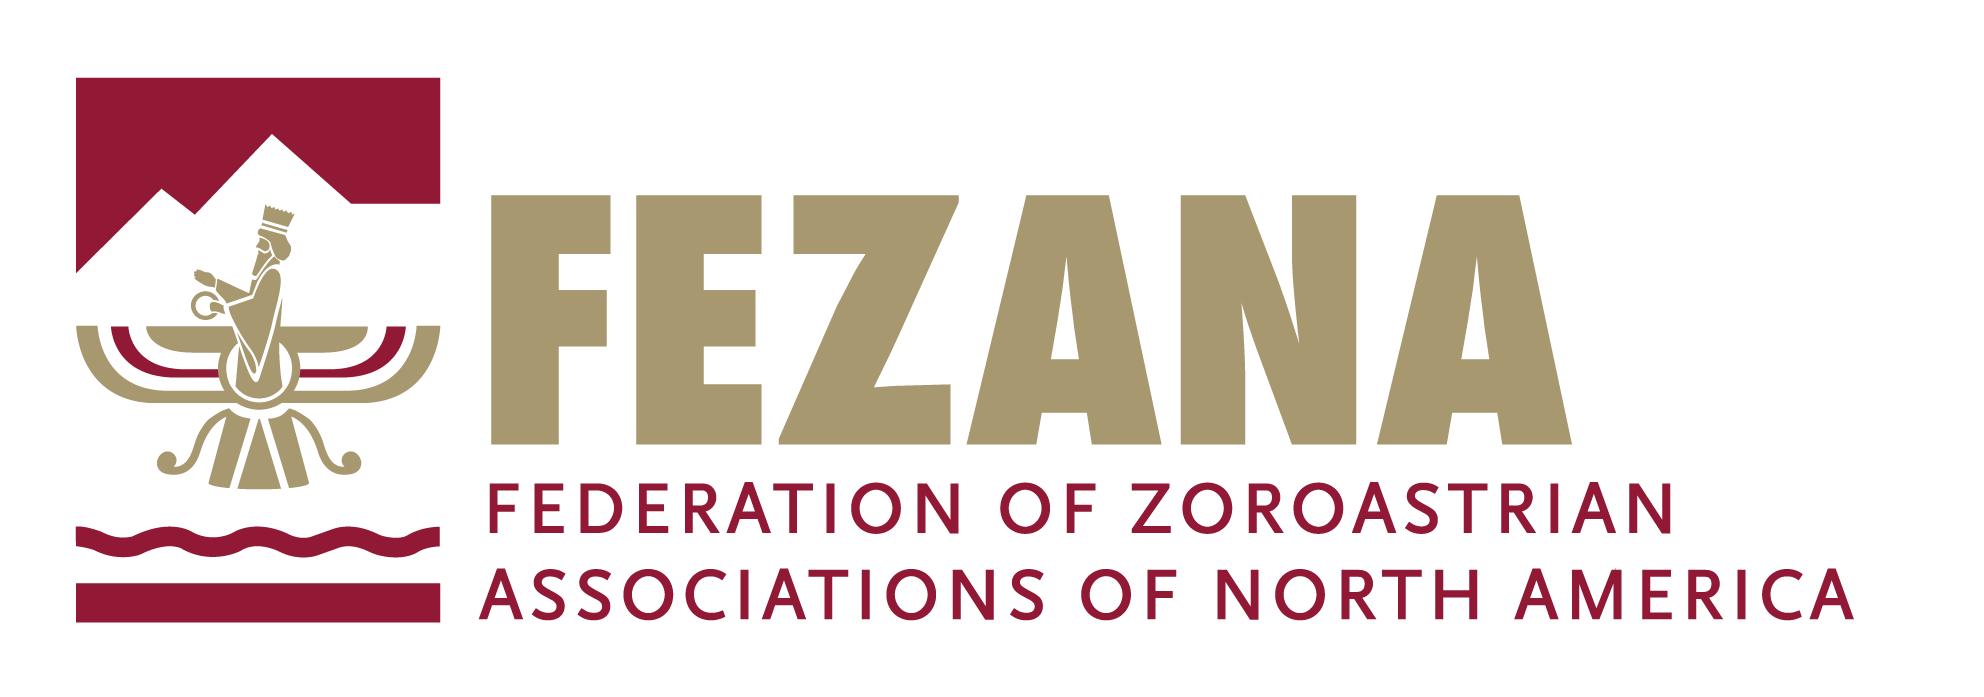 FEZANA logo